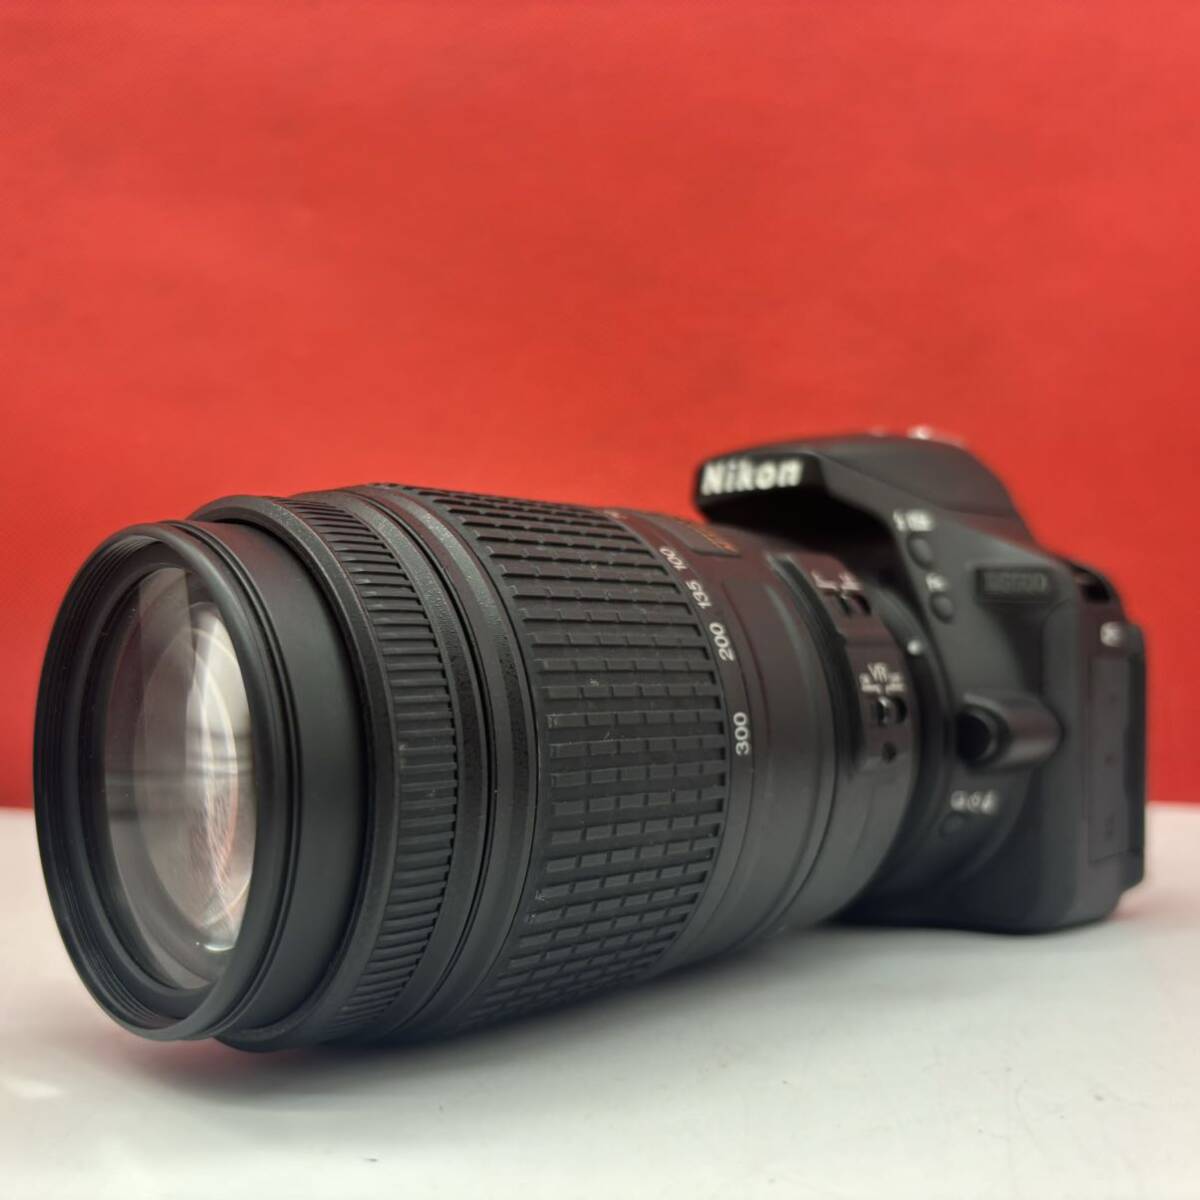 ◆ Nikon D5500 デジタル一眼レフカメラ ボディ DX AF-S NIKKOR 55-300mm F4.5-5.6G ED シャッターOK ニコン